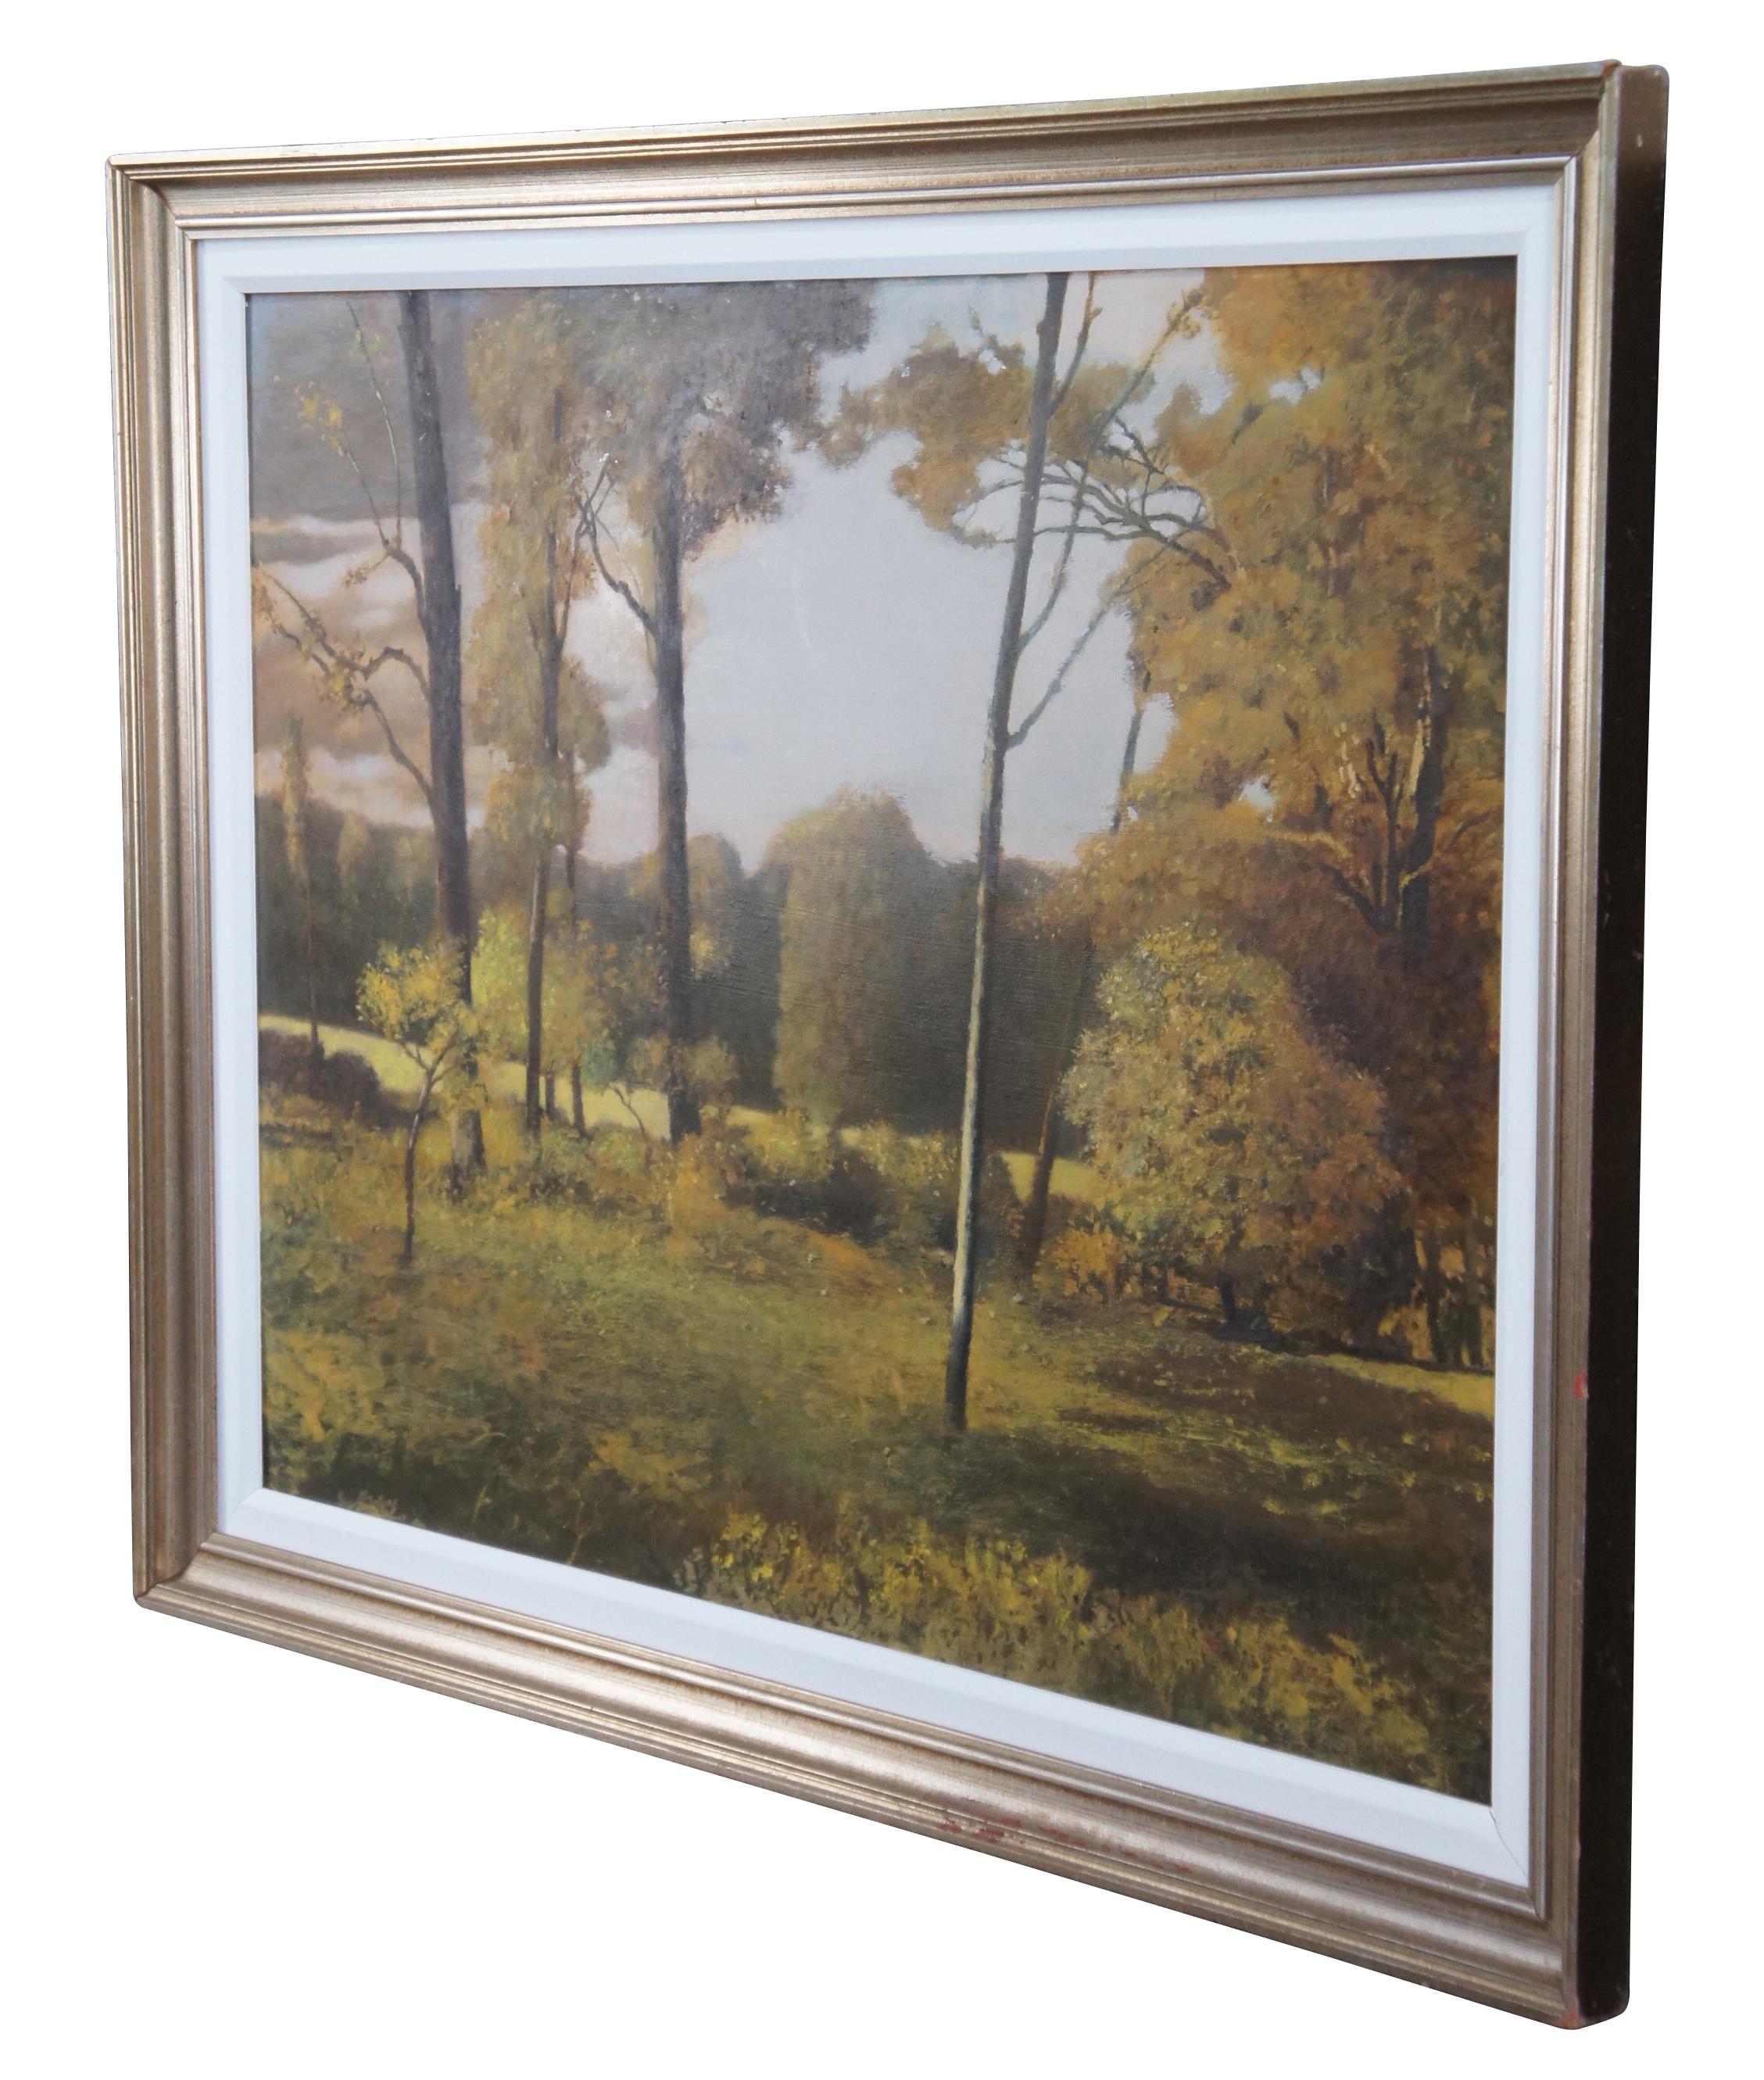 Peinture à l'huile sur toile vintage de Ronald Renmark représentant un paysage naturel intact de forêt et d'arbres situé quelque part en Virginie.  Réalisé par Ronald pour un de ses clients qu'il décorait également.

Ronald Eastbourne Renmark